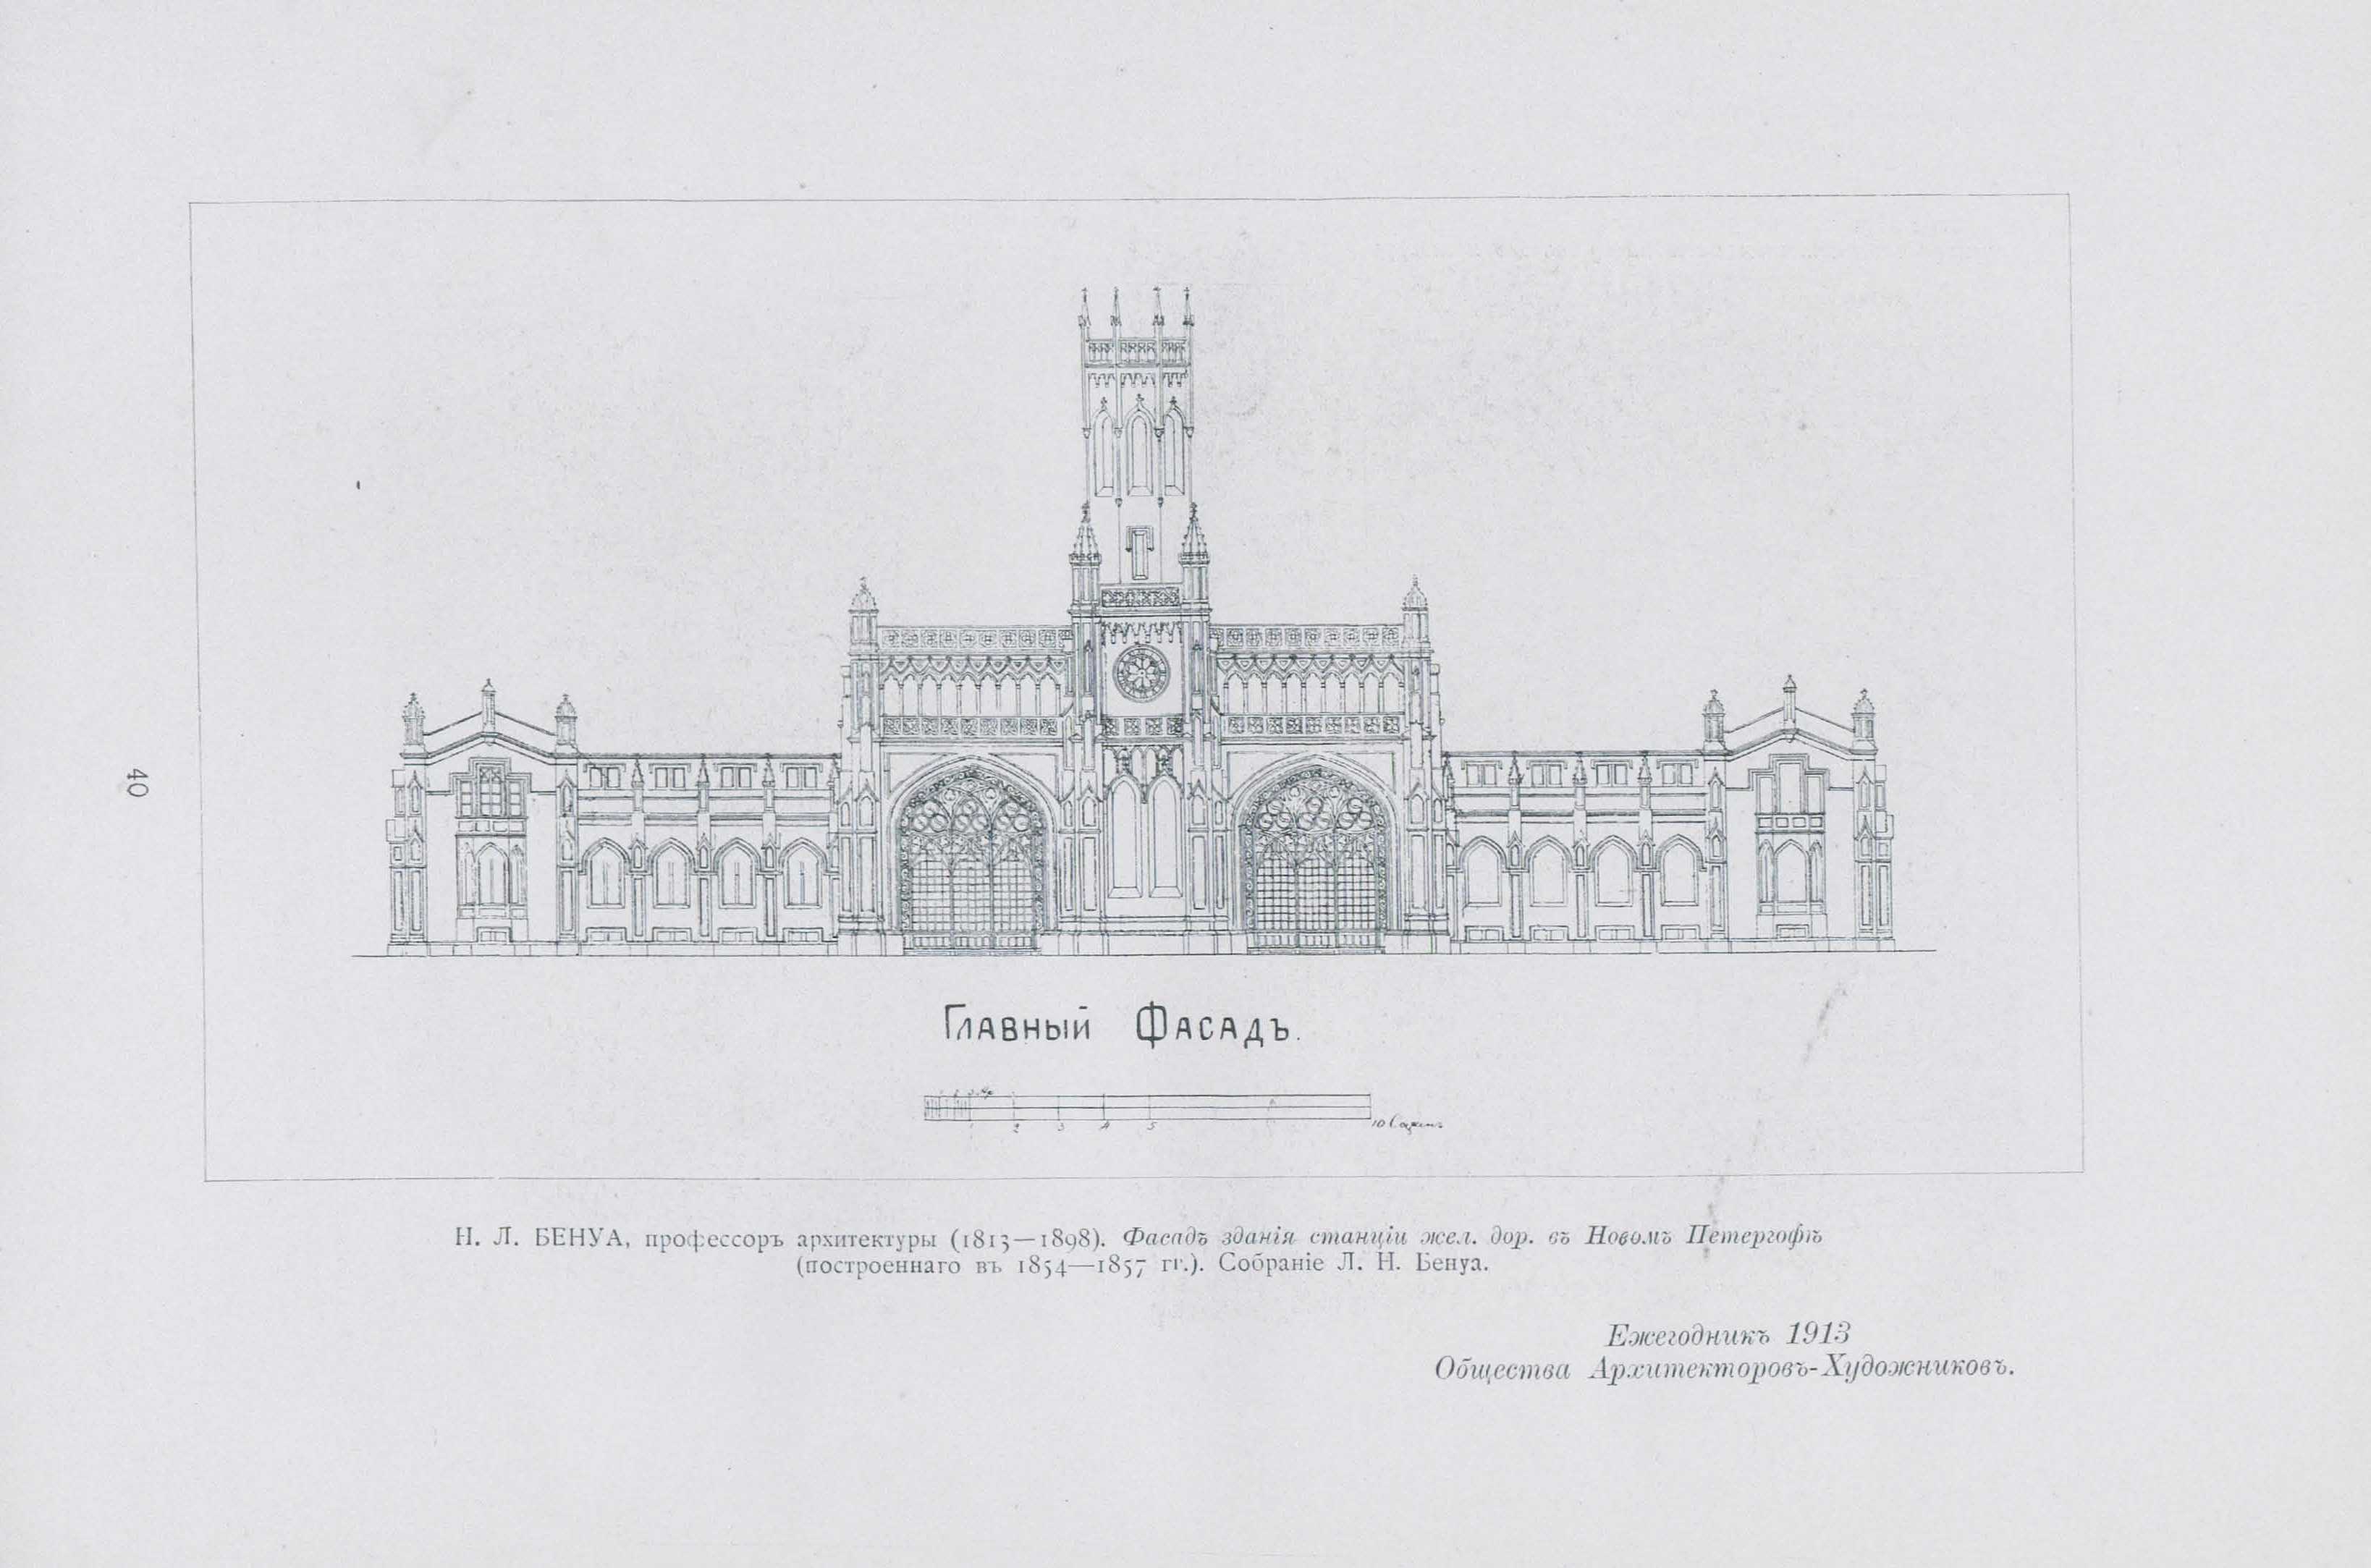 Н. Л. Бенуа. Главный фасад здания станции железной дороги в Новом Петергофе, построенного в 1854—1857 гг.